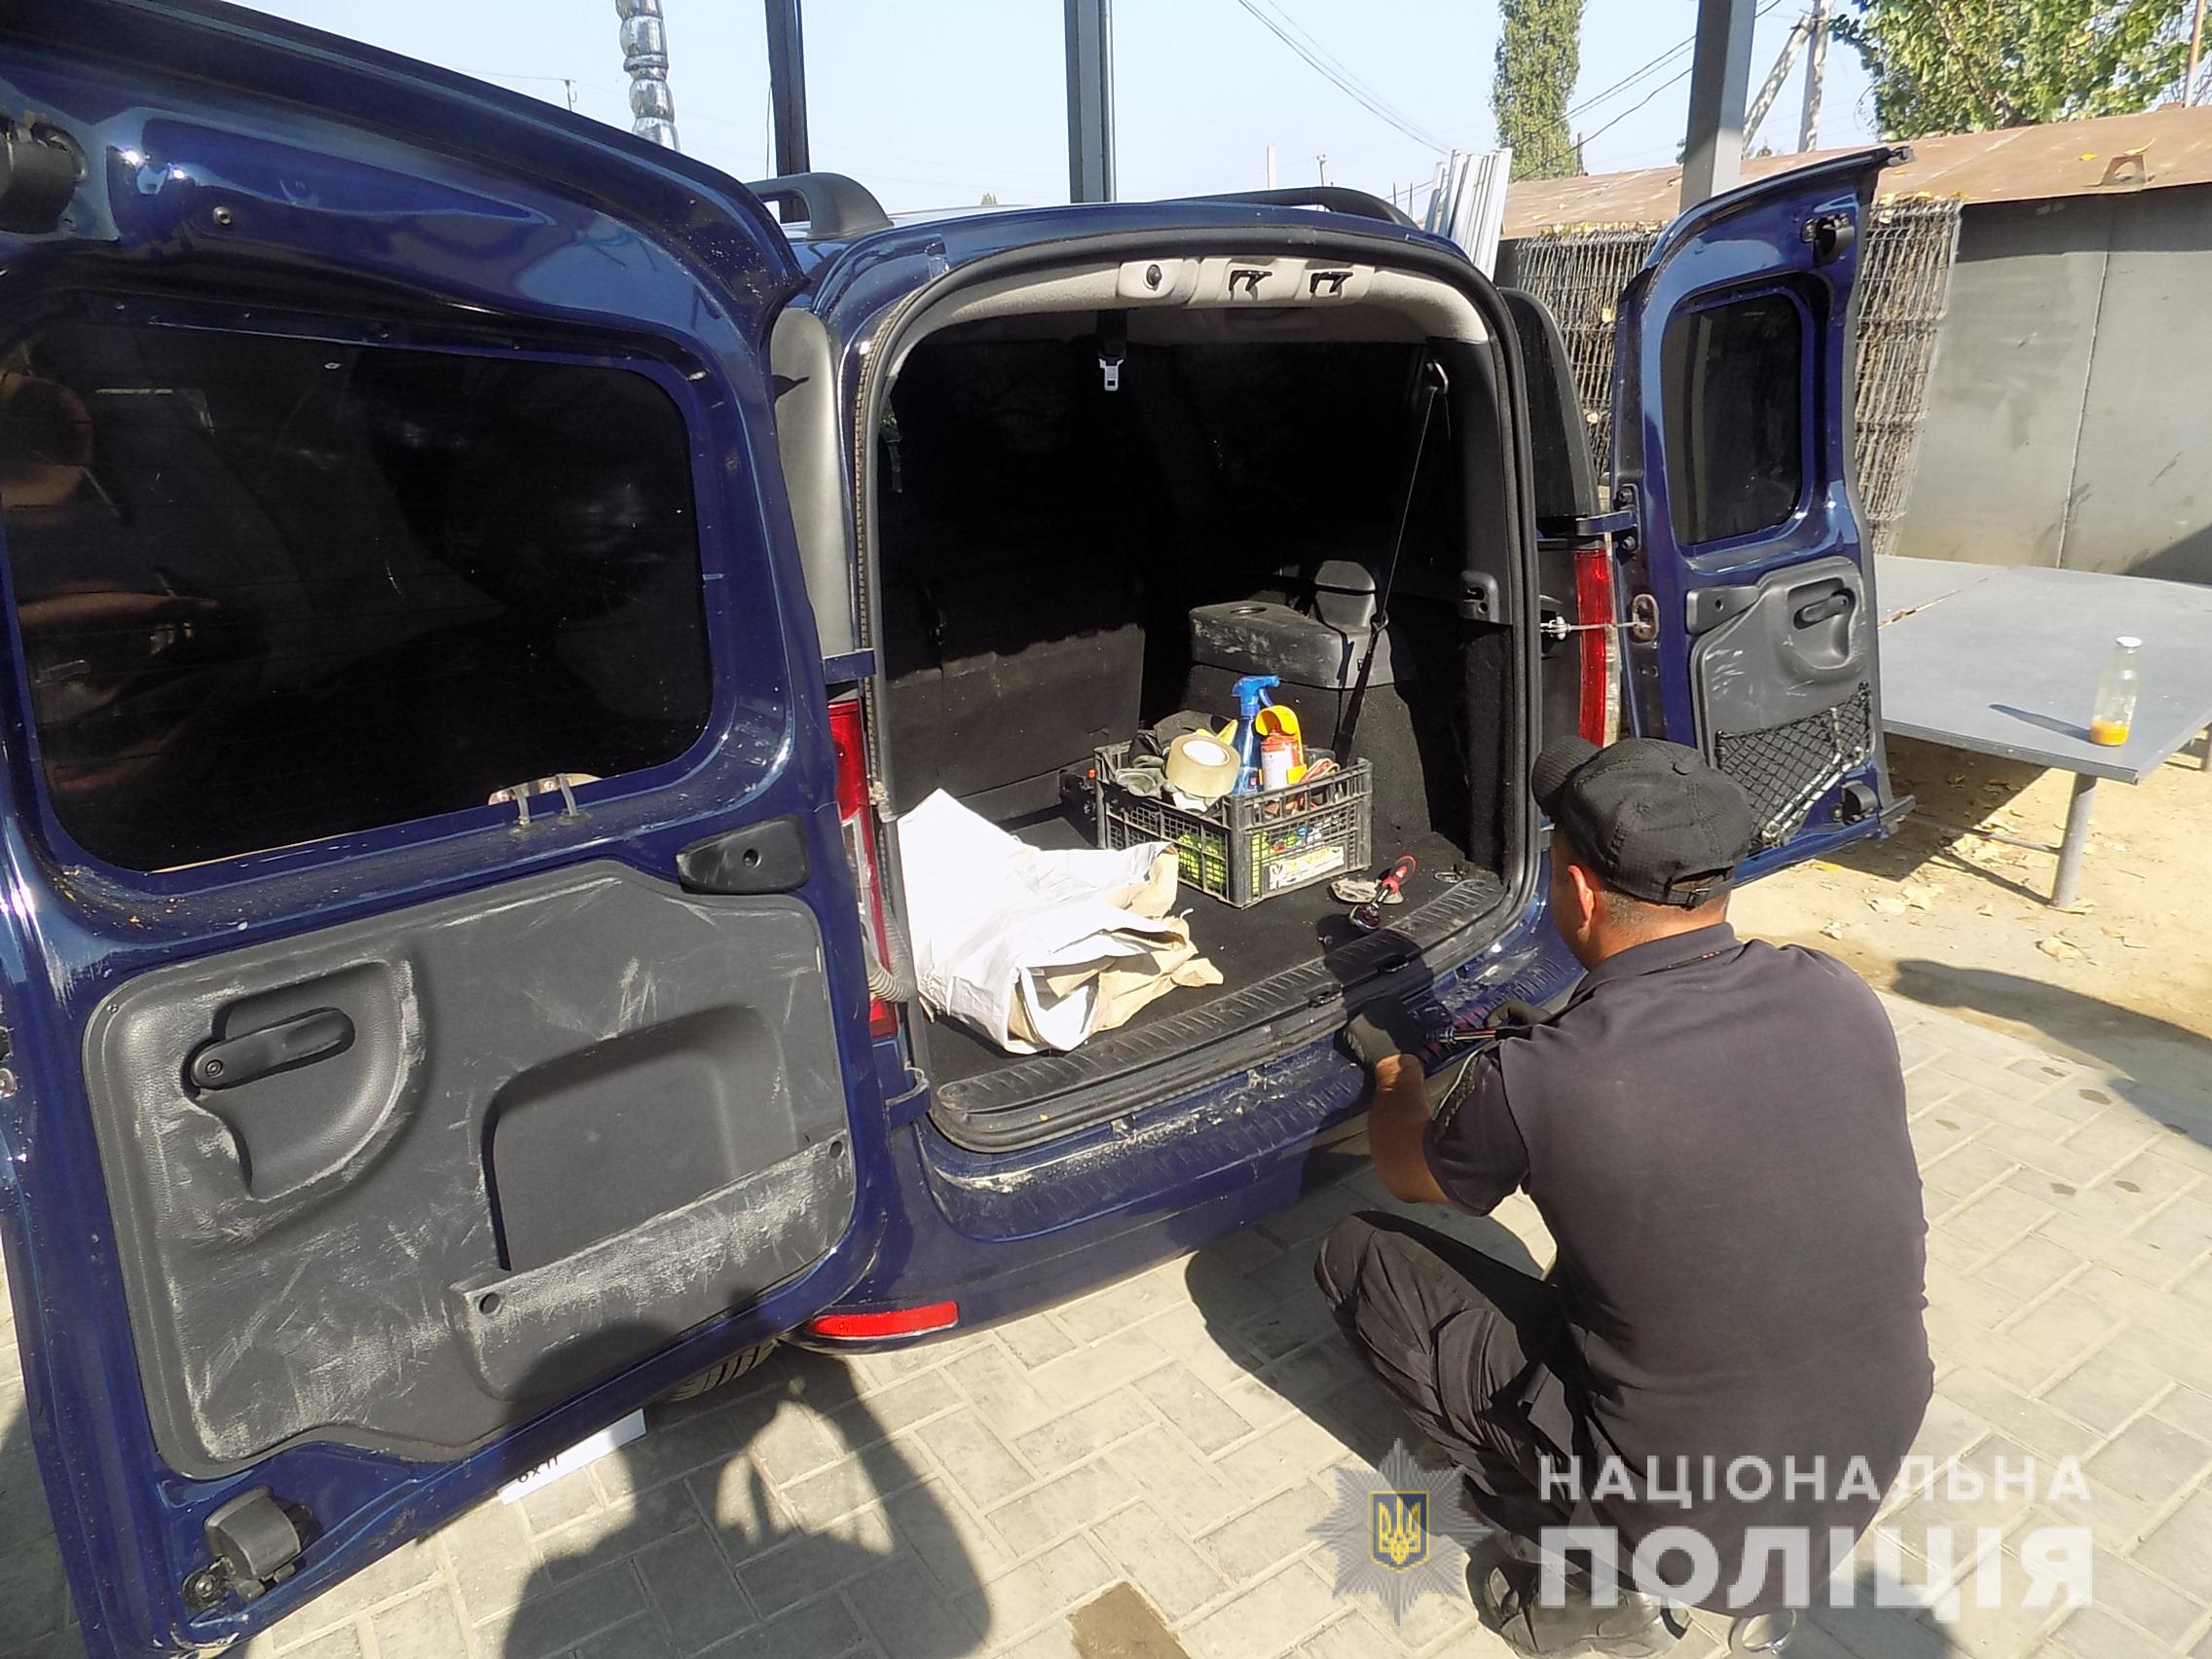 Белгород-Днестровская полиция и пограничники задержали в «Паланке» иностранца с арсеналом боеприпасов